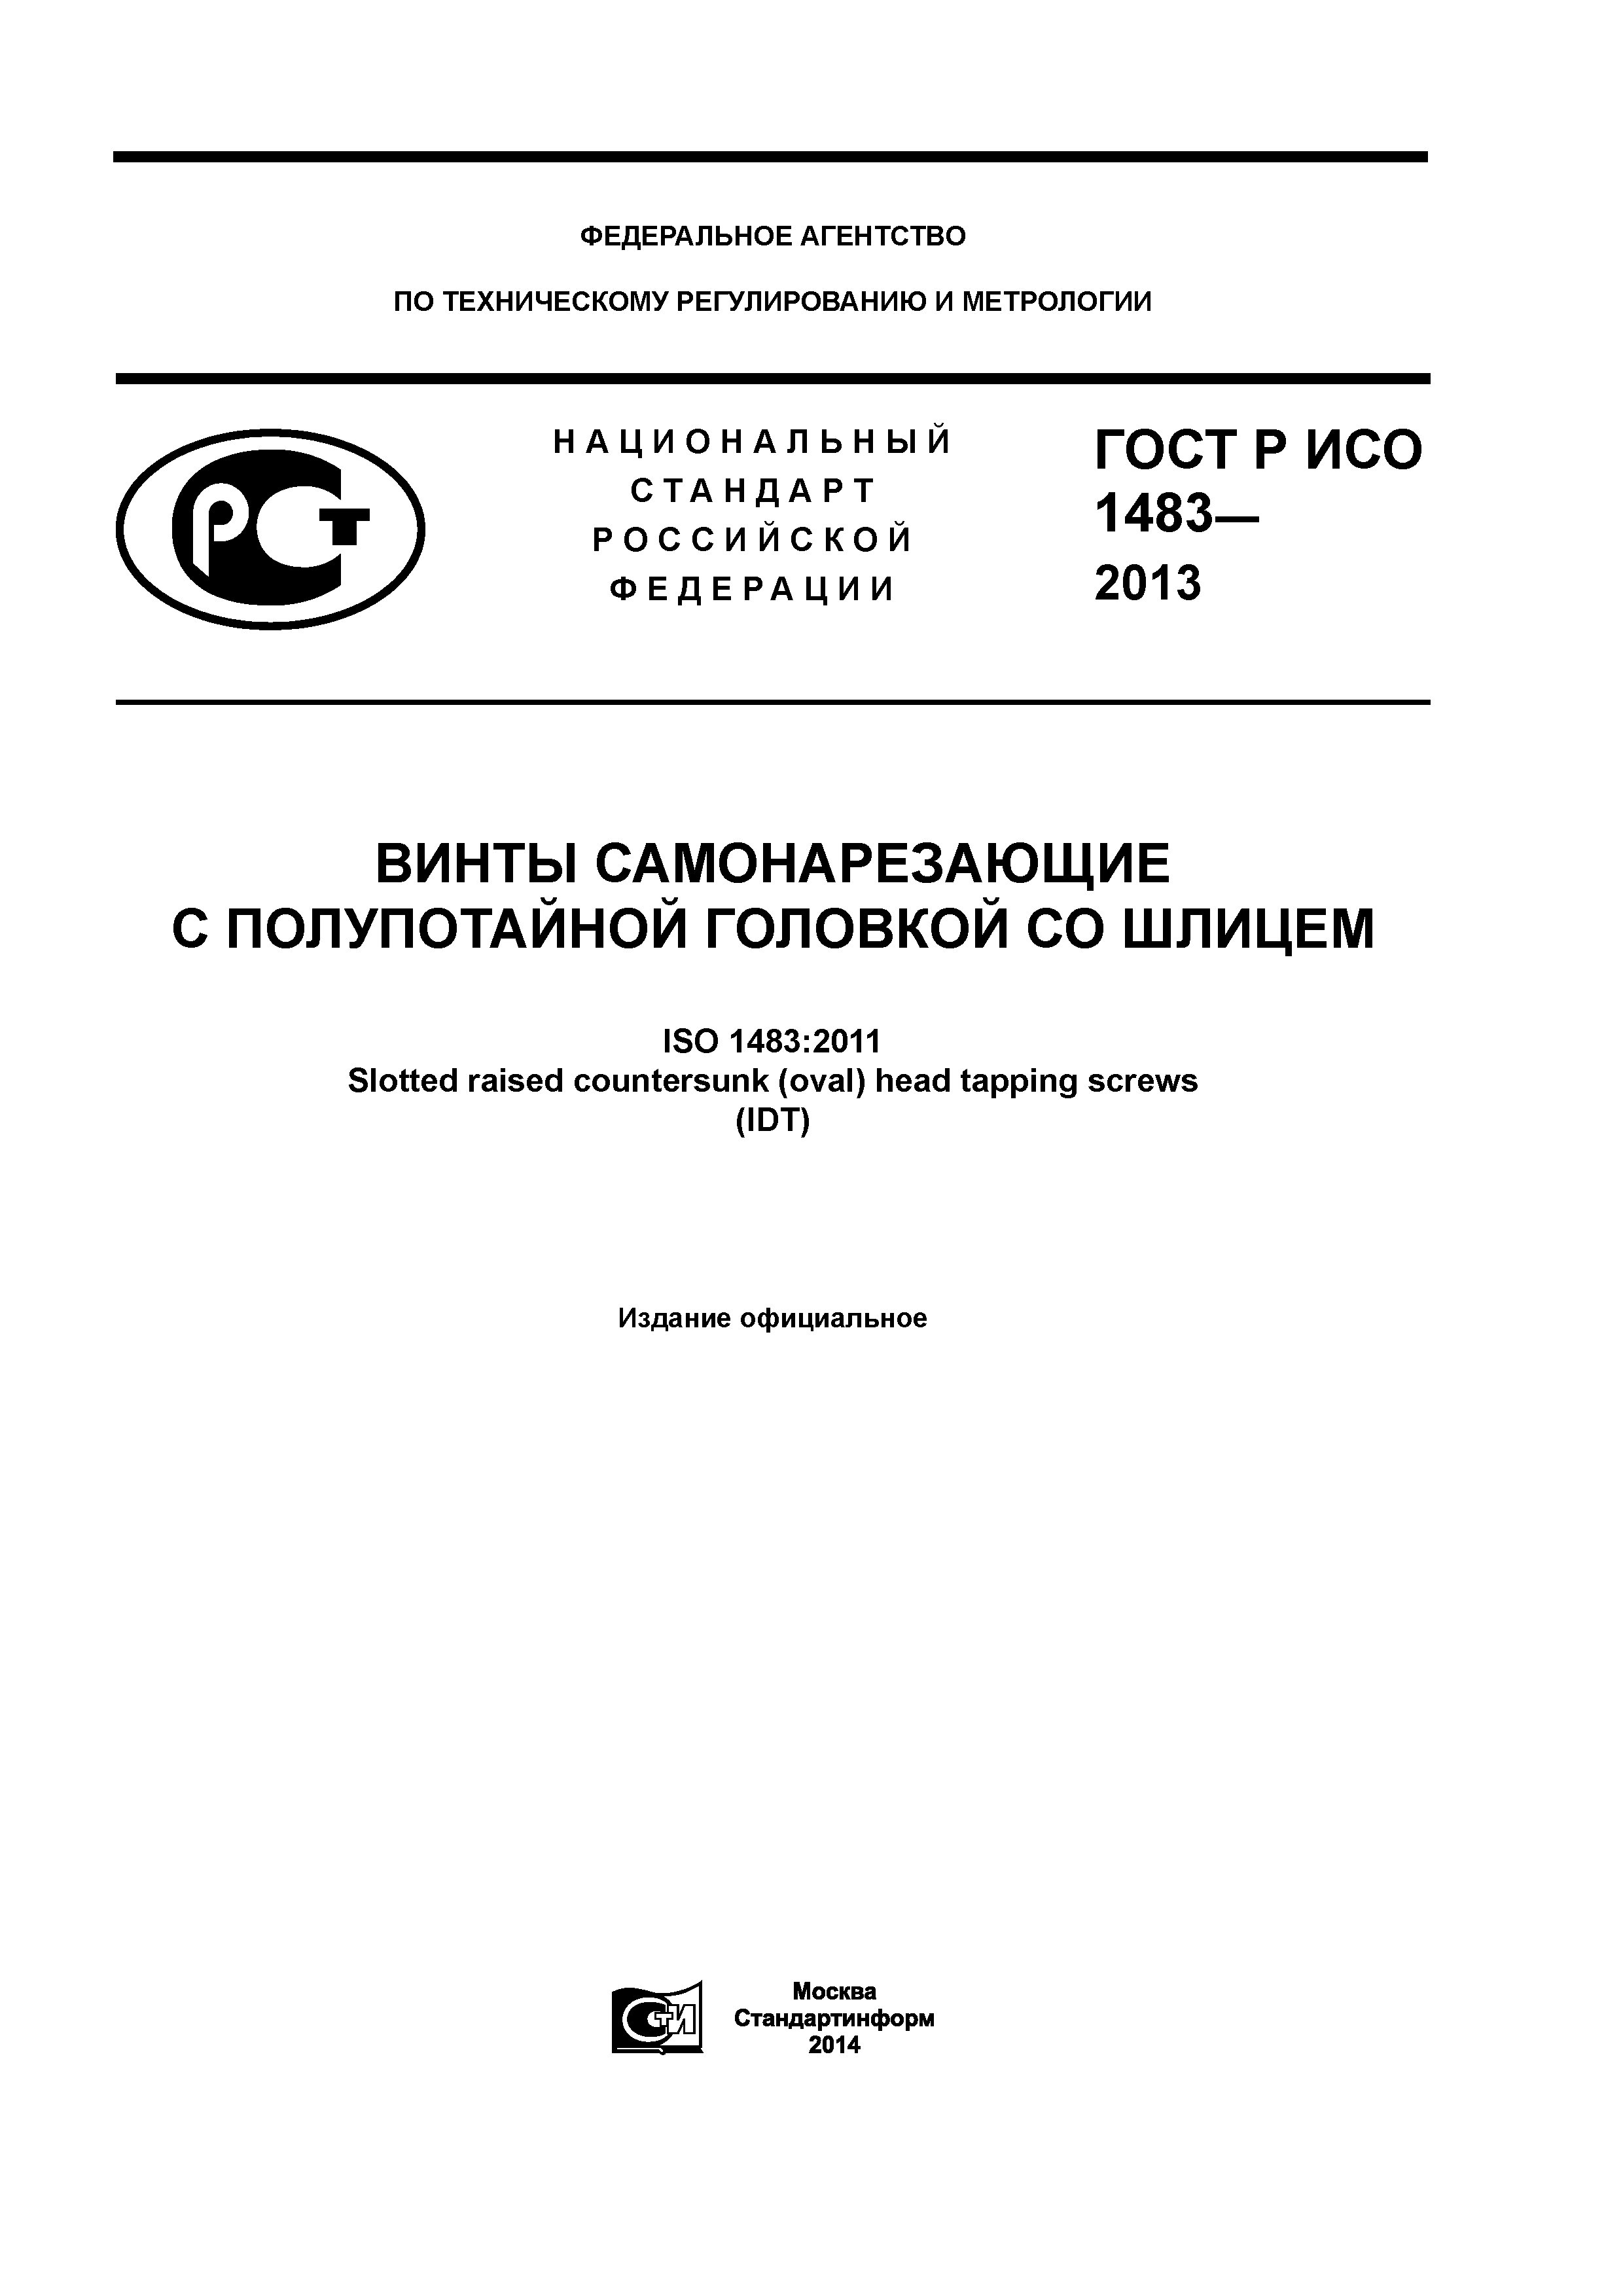 ГОСТ Р ИСО 1483-2013